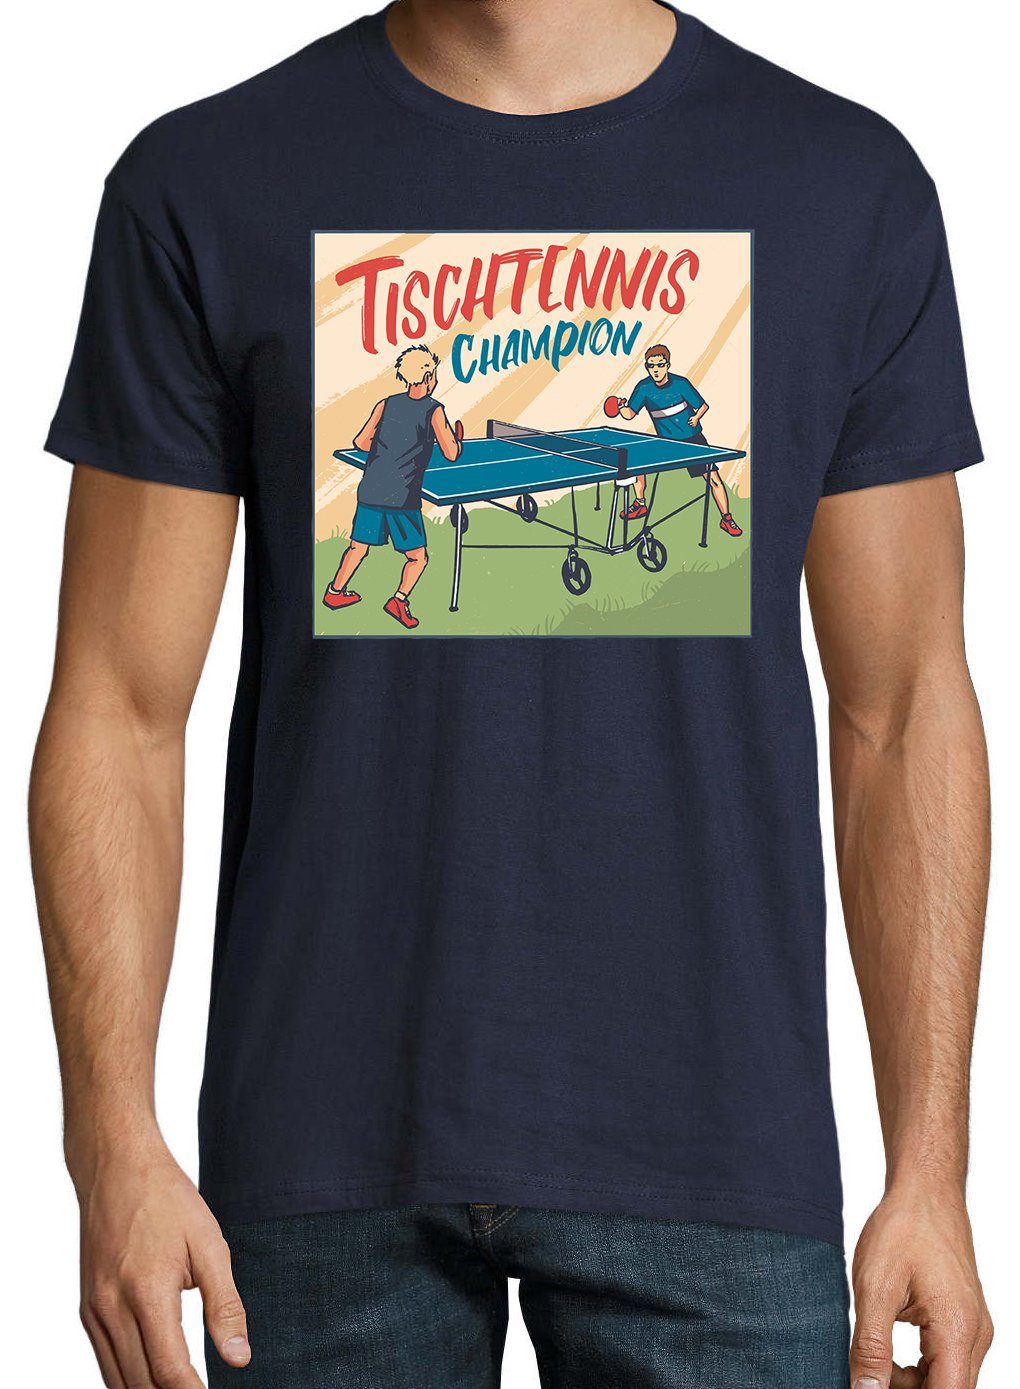 Champion Navyblau mit Frontprint Youth T-Shirt Shirt Herren Tischtennis trendigem Designz